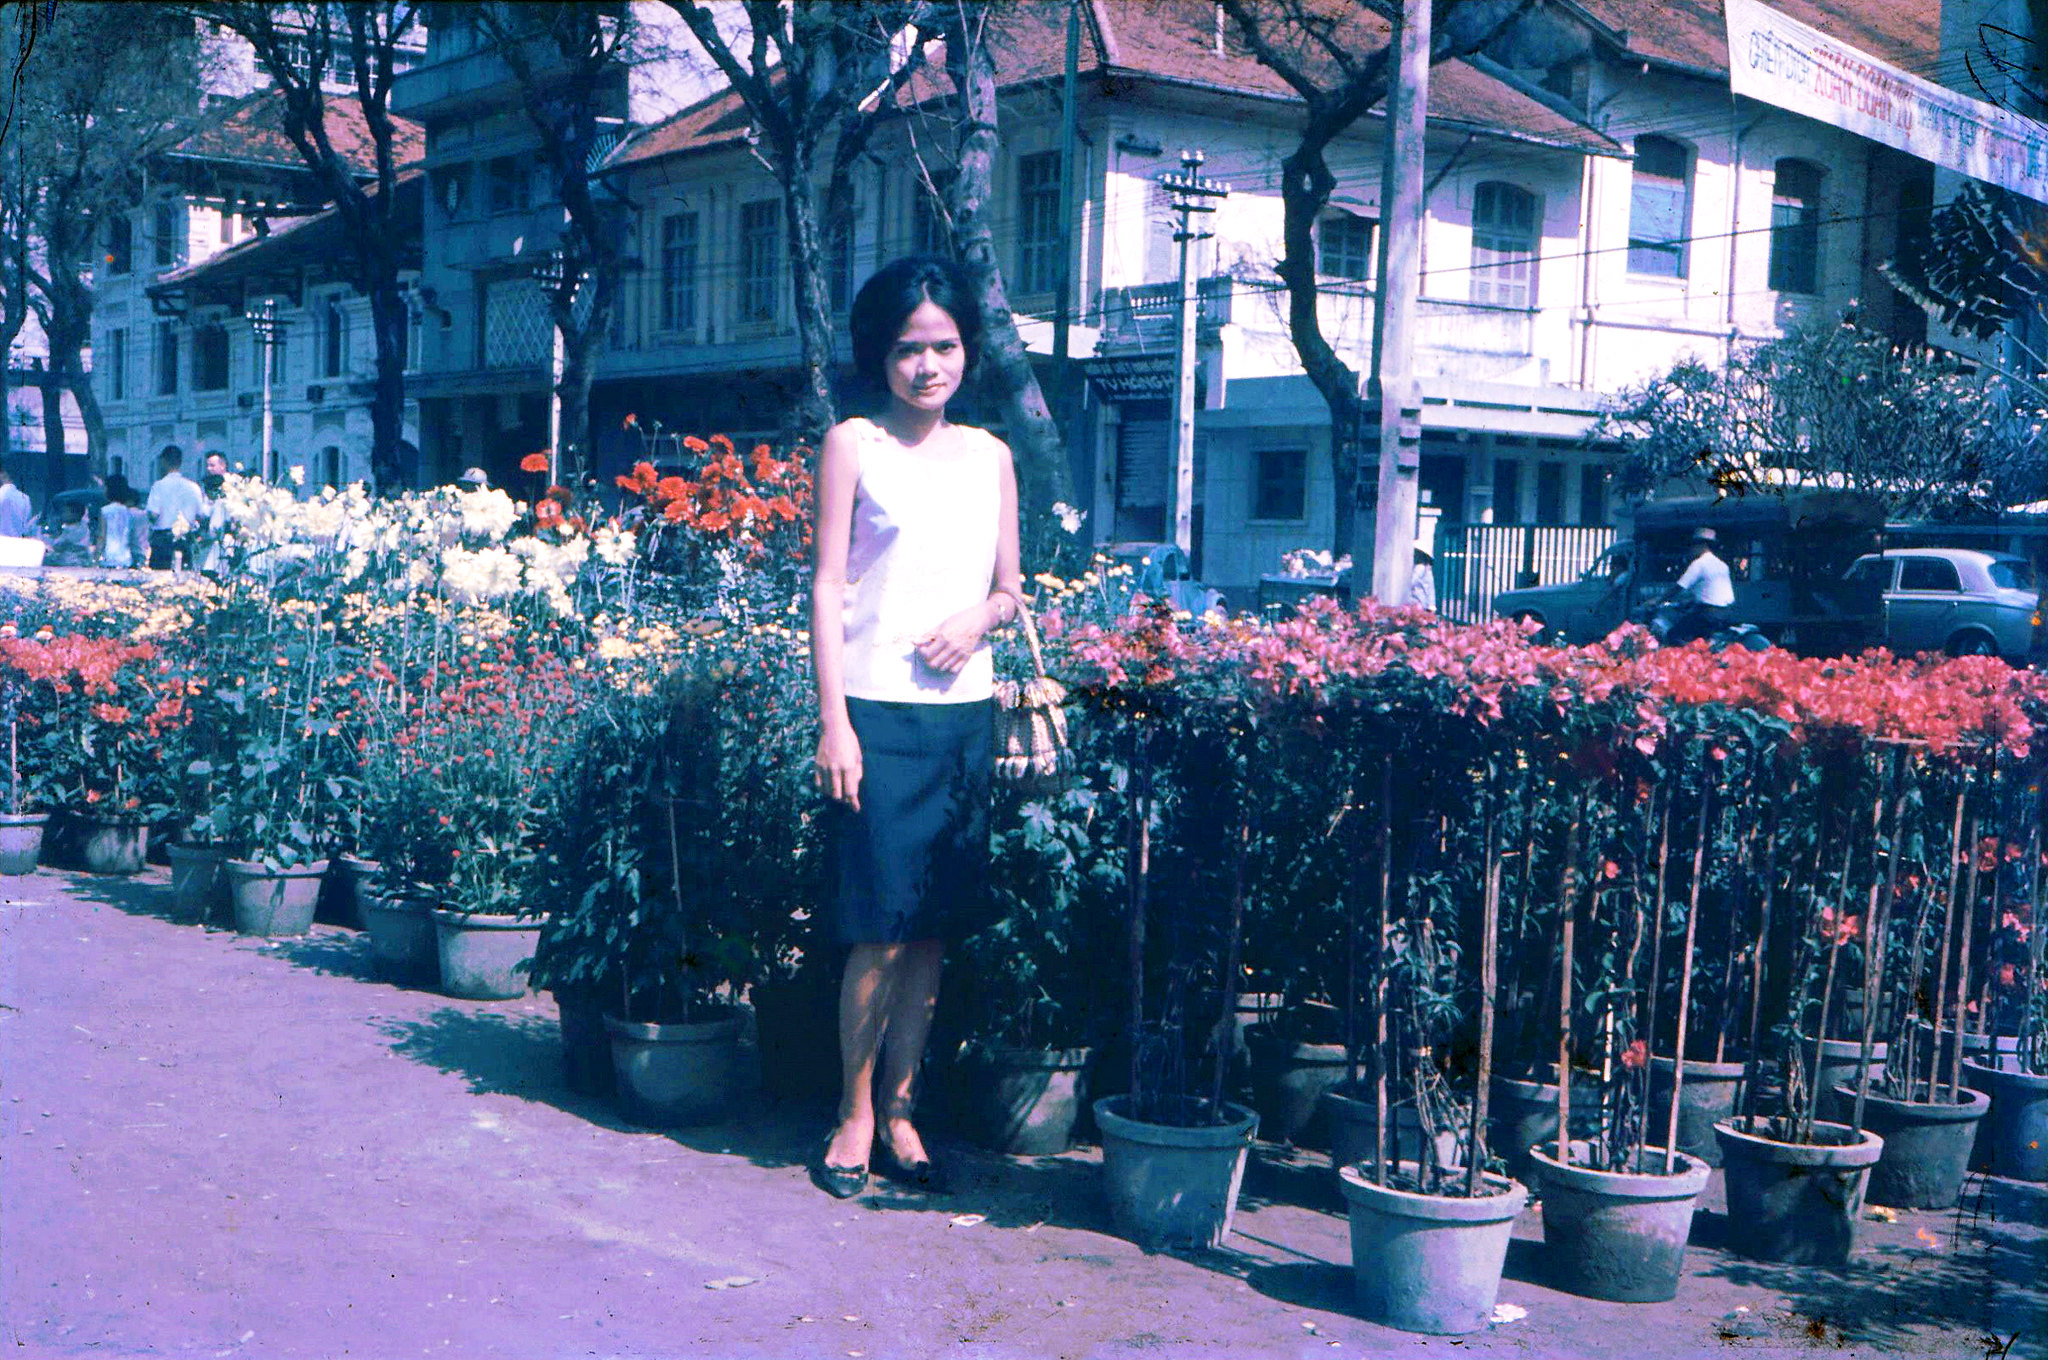 cho hoa nguyen hue 1967 - Thời trang Tết Việt thế kỷ 20, ông bà ta cũng rất “bắt trend”